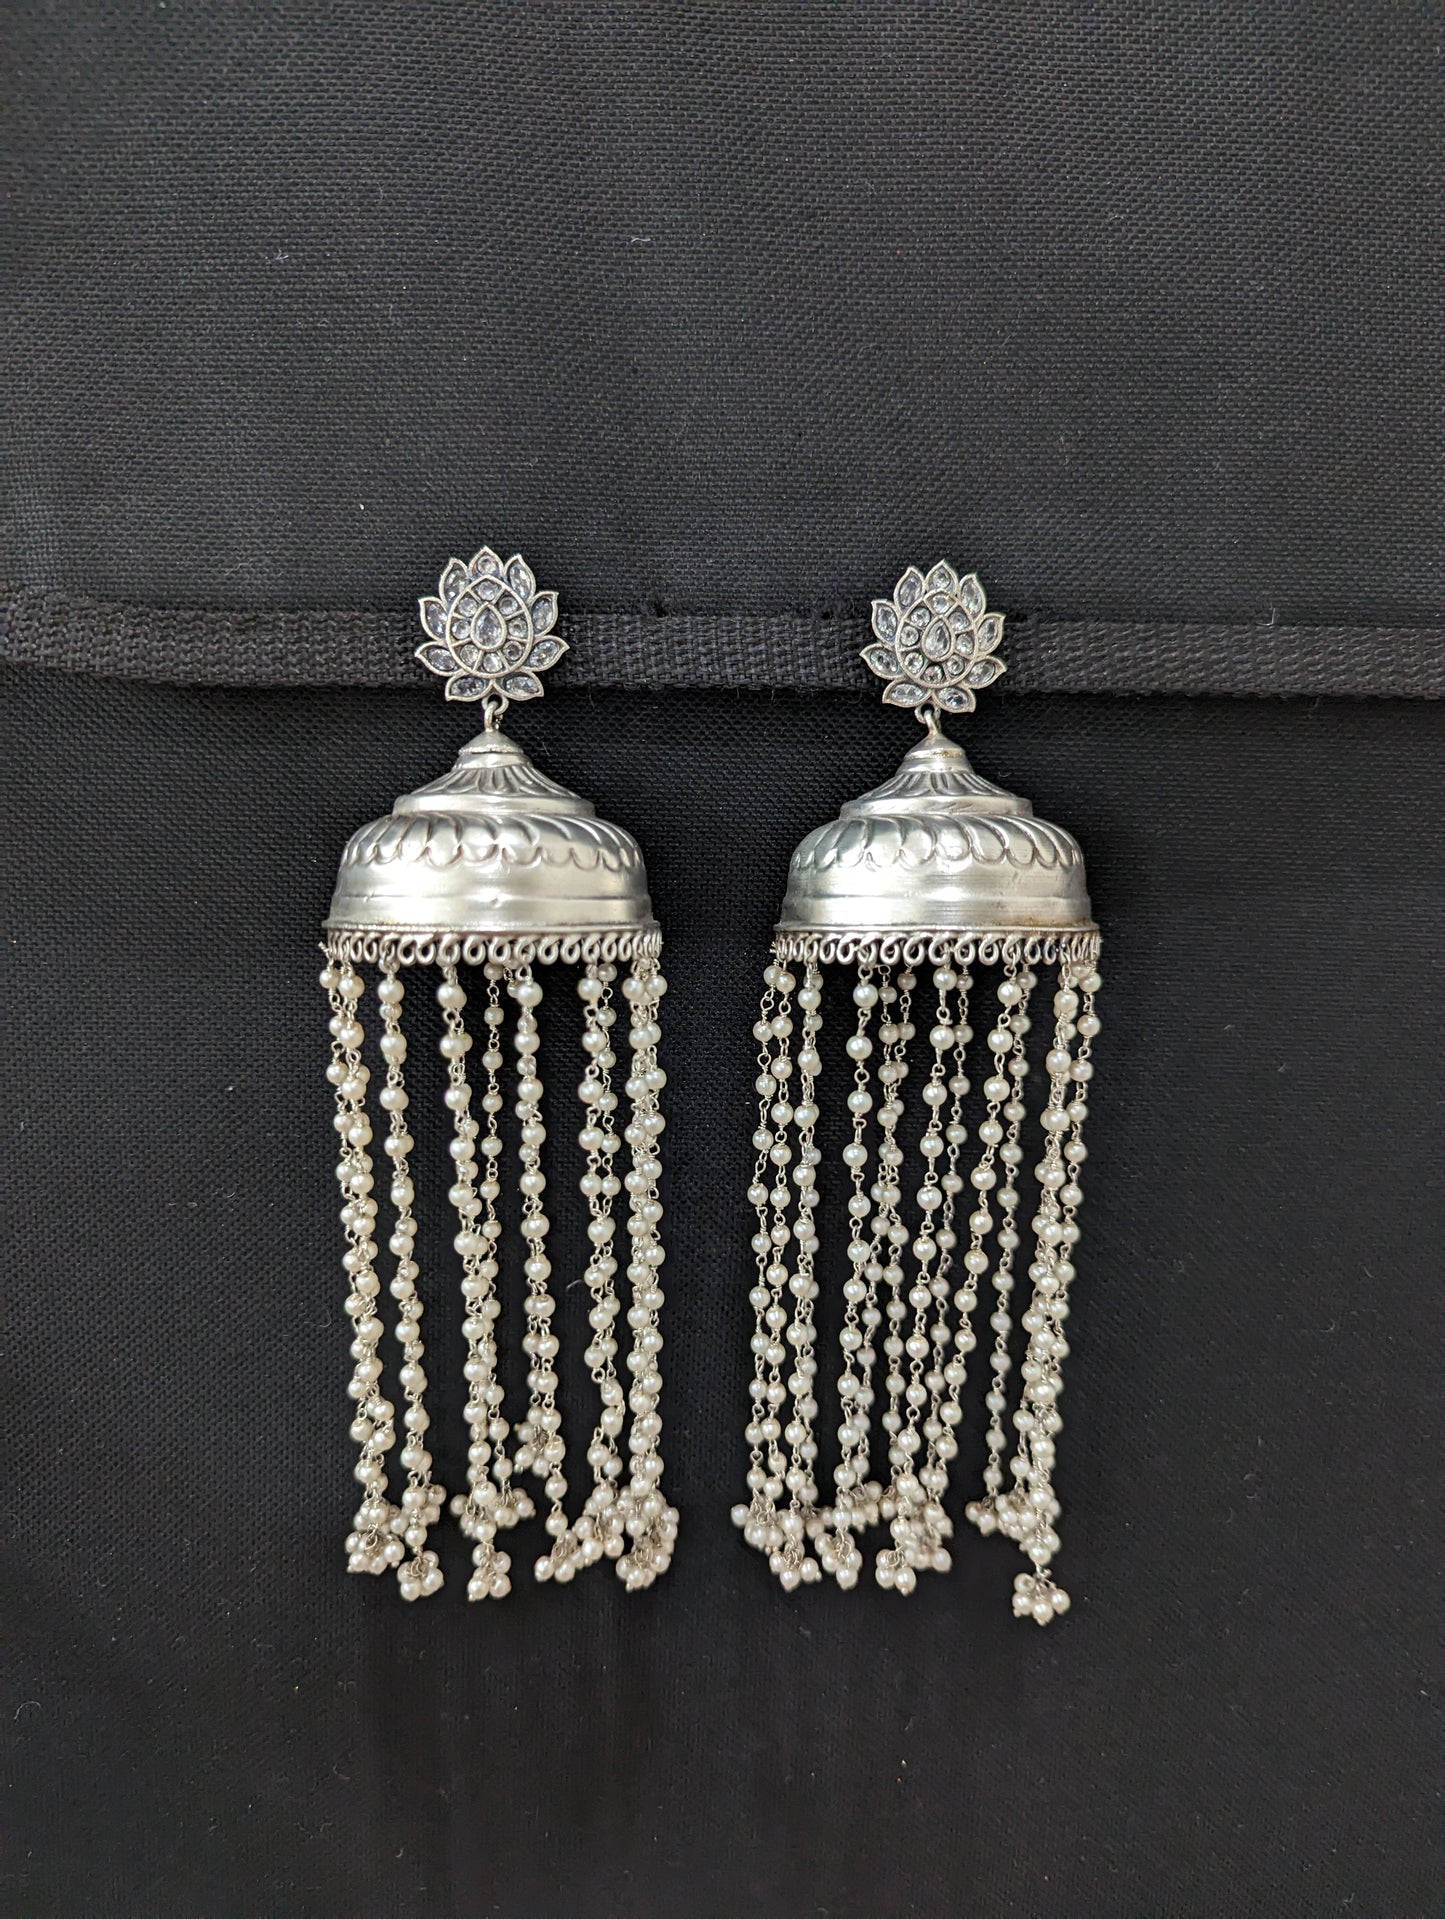 XXL size pearl tassel Long silver jhumka earrings